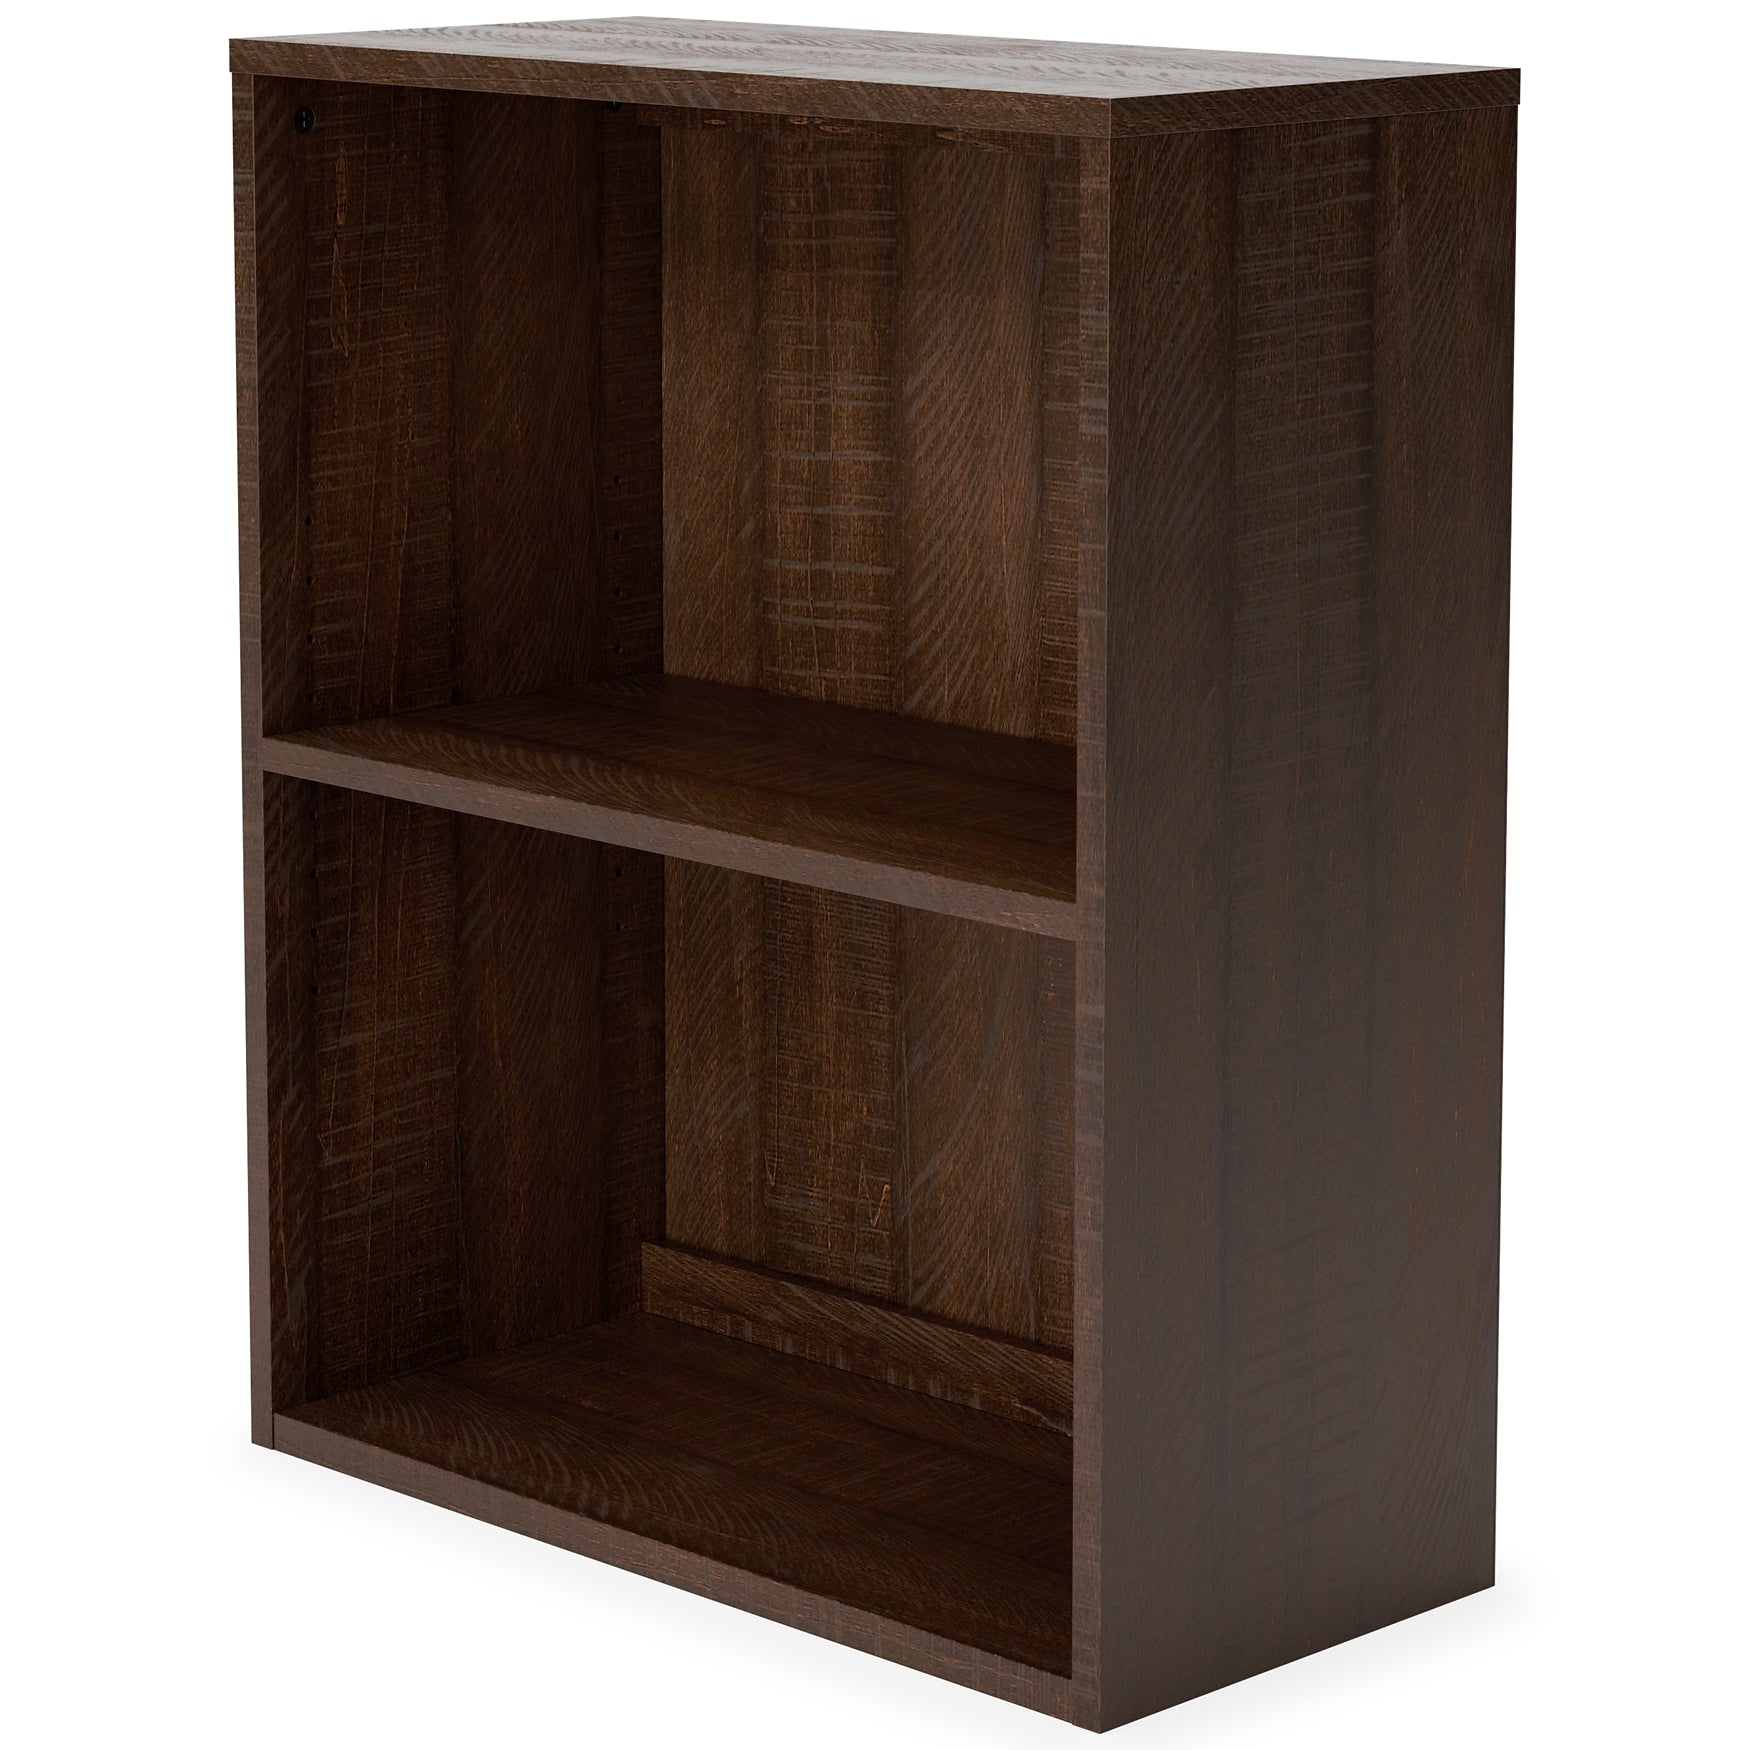 Camiburg Small Bookcase JB's Furniture  Home Furniture, Home Decor, Furniture Store